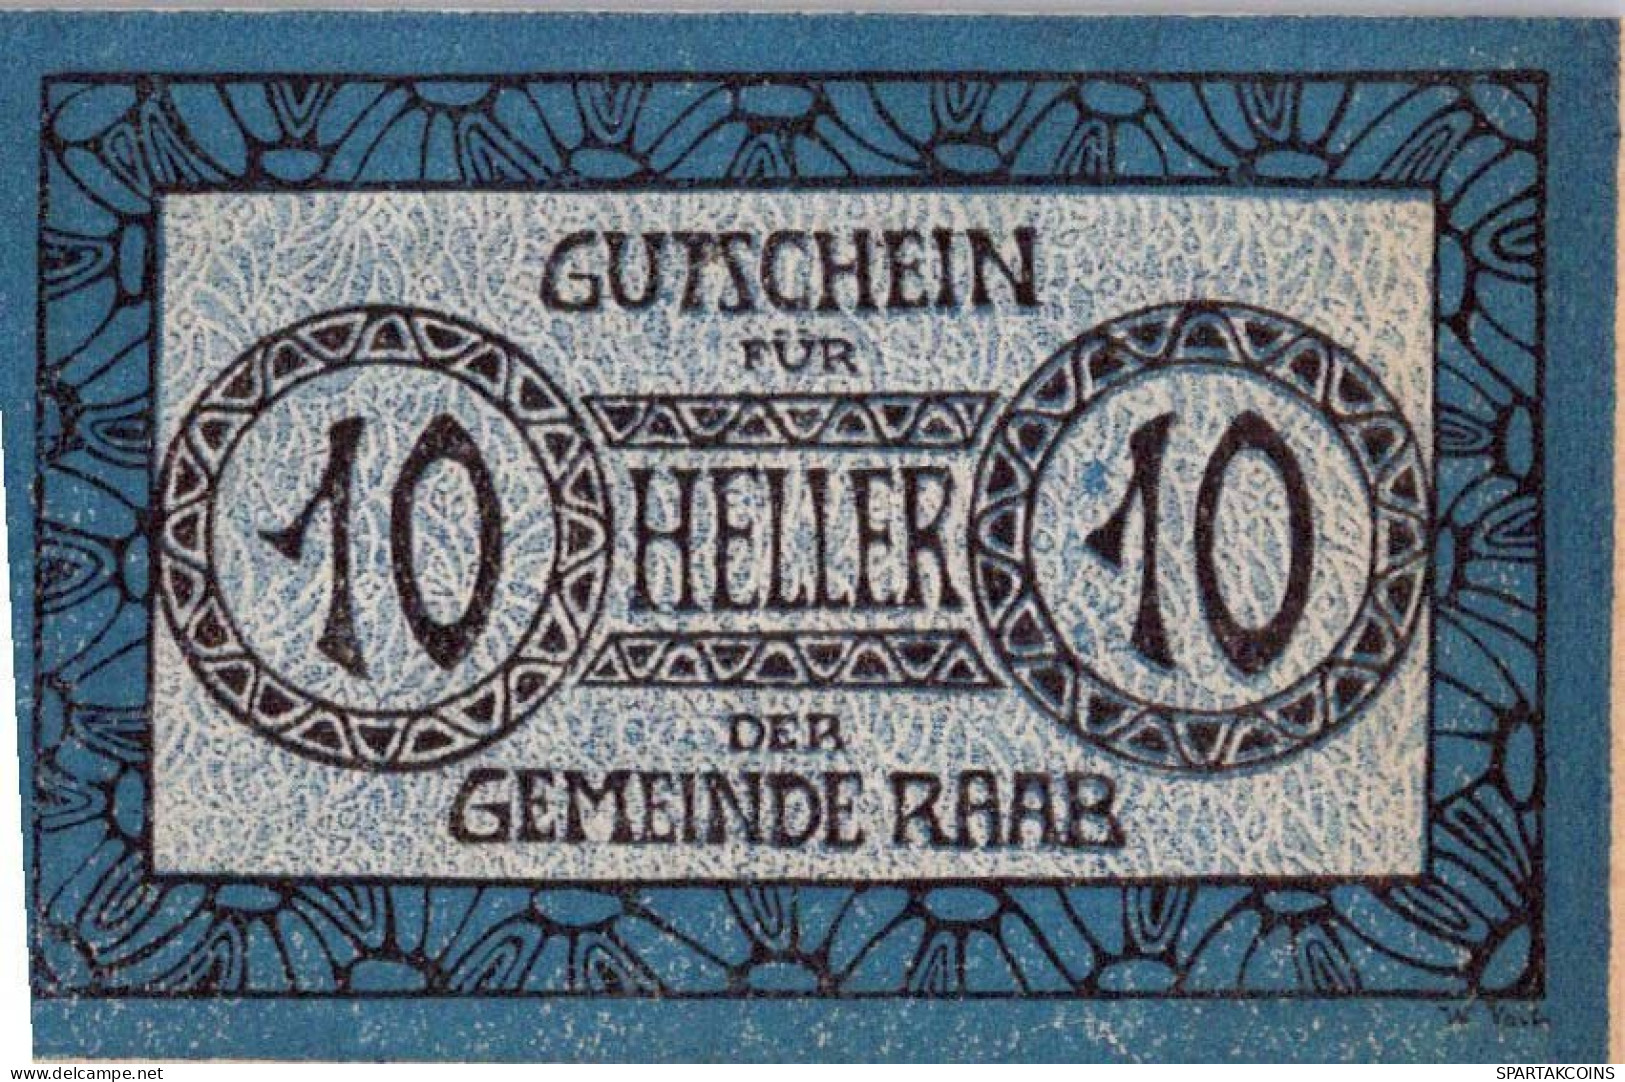 10 HELLER 1920 Stadt RAAB Oberösterreich Österreich UNC Österreich Notgeld Banknote #PH450 - [11] Emissioni Locali